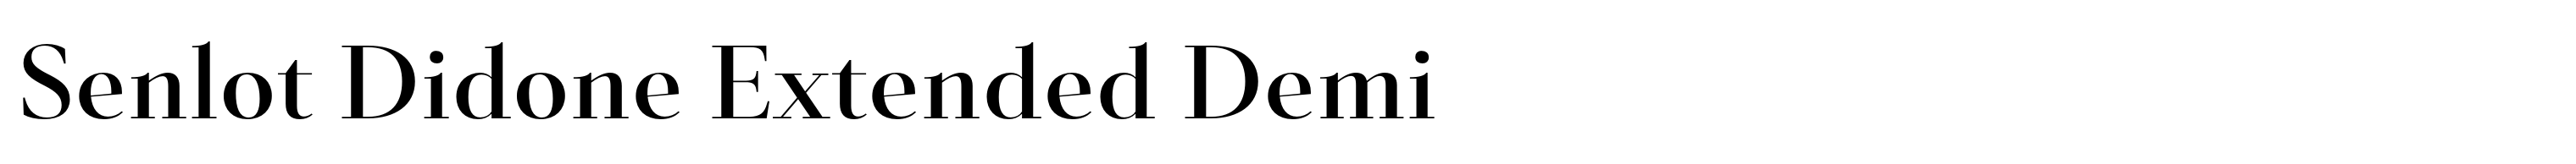 Senlot Didone Extended Demi